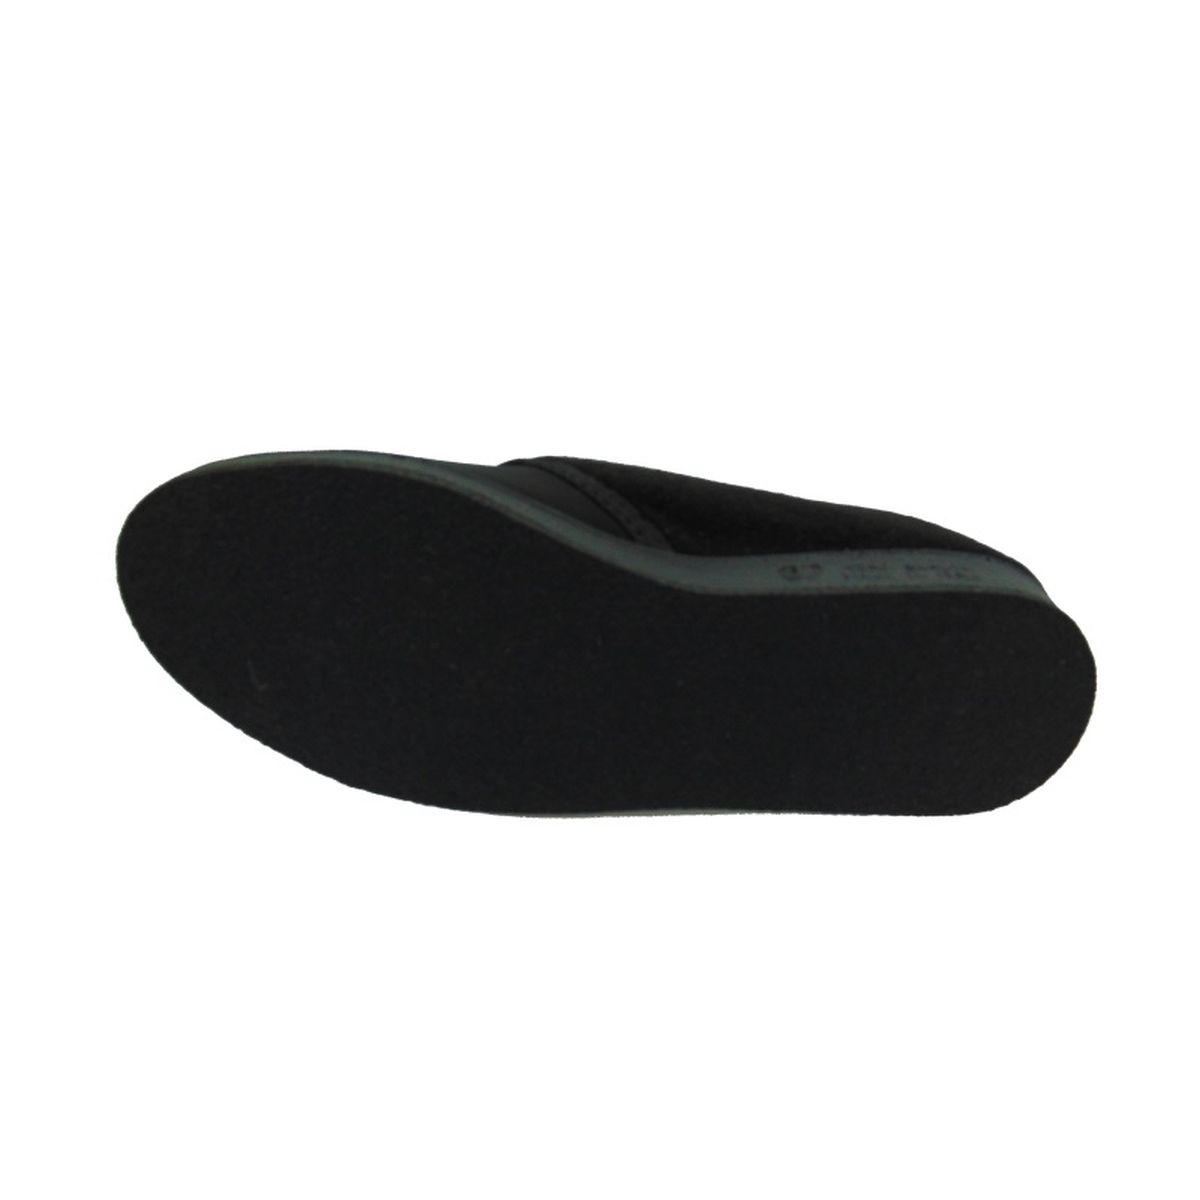 Pantofola Donna elasticizzata con strappo Emanuela 601 nero (versione invernale)